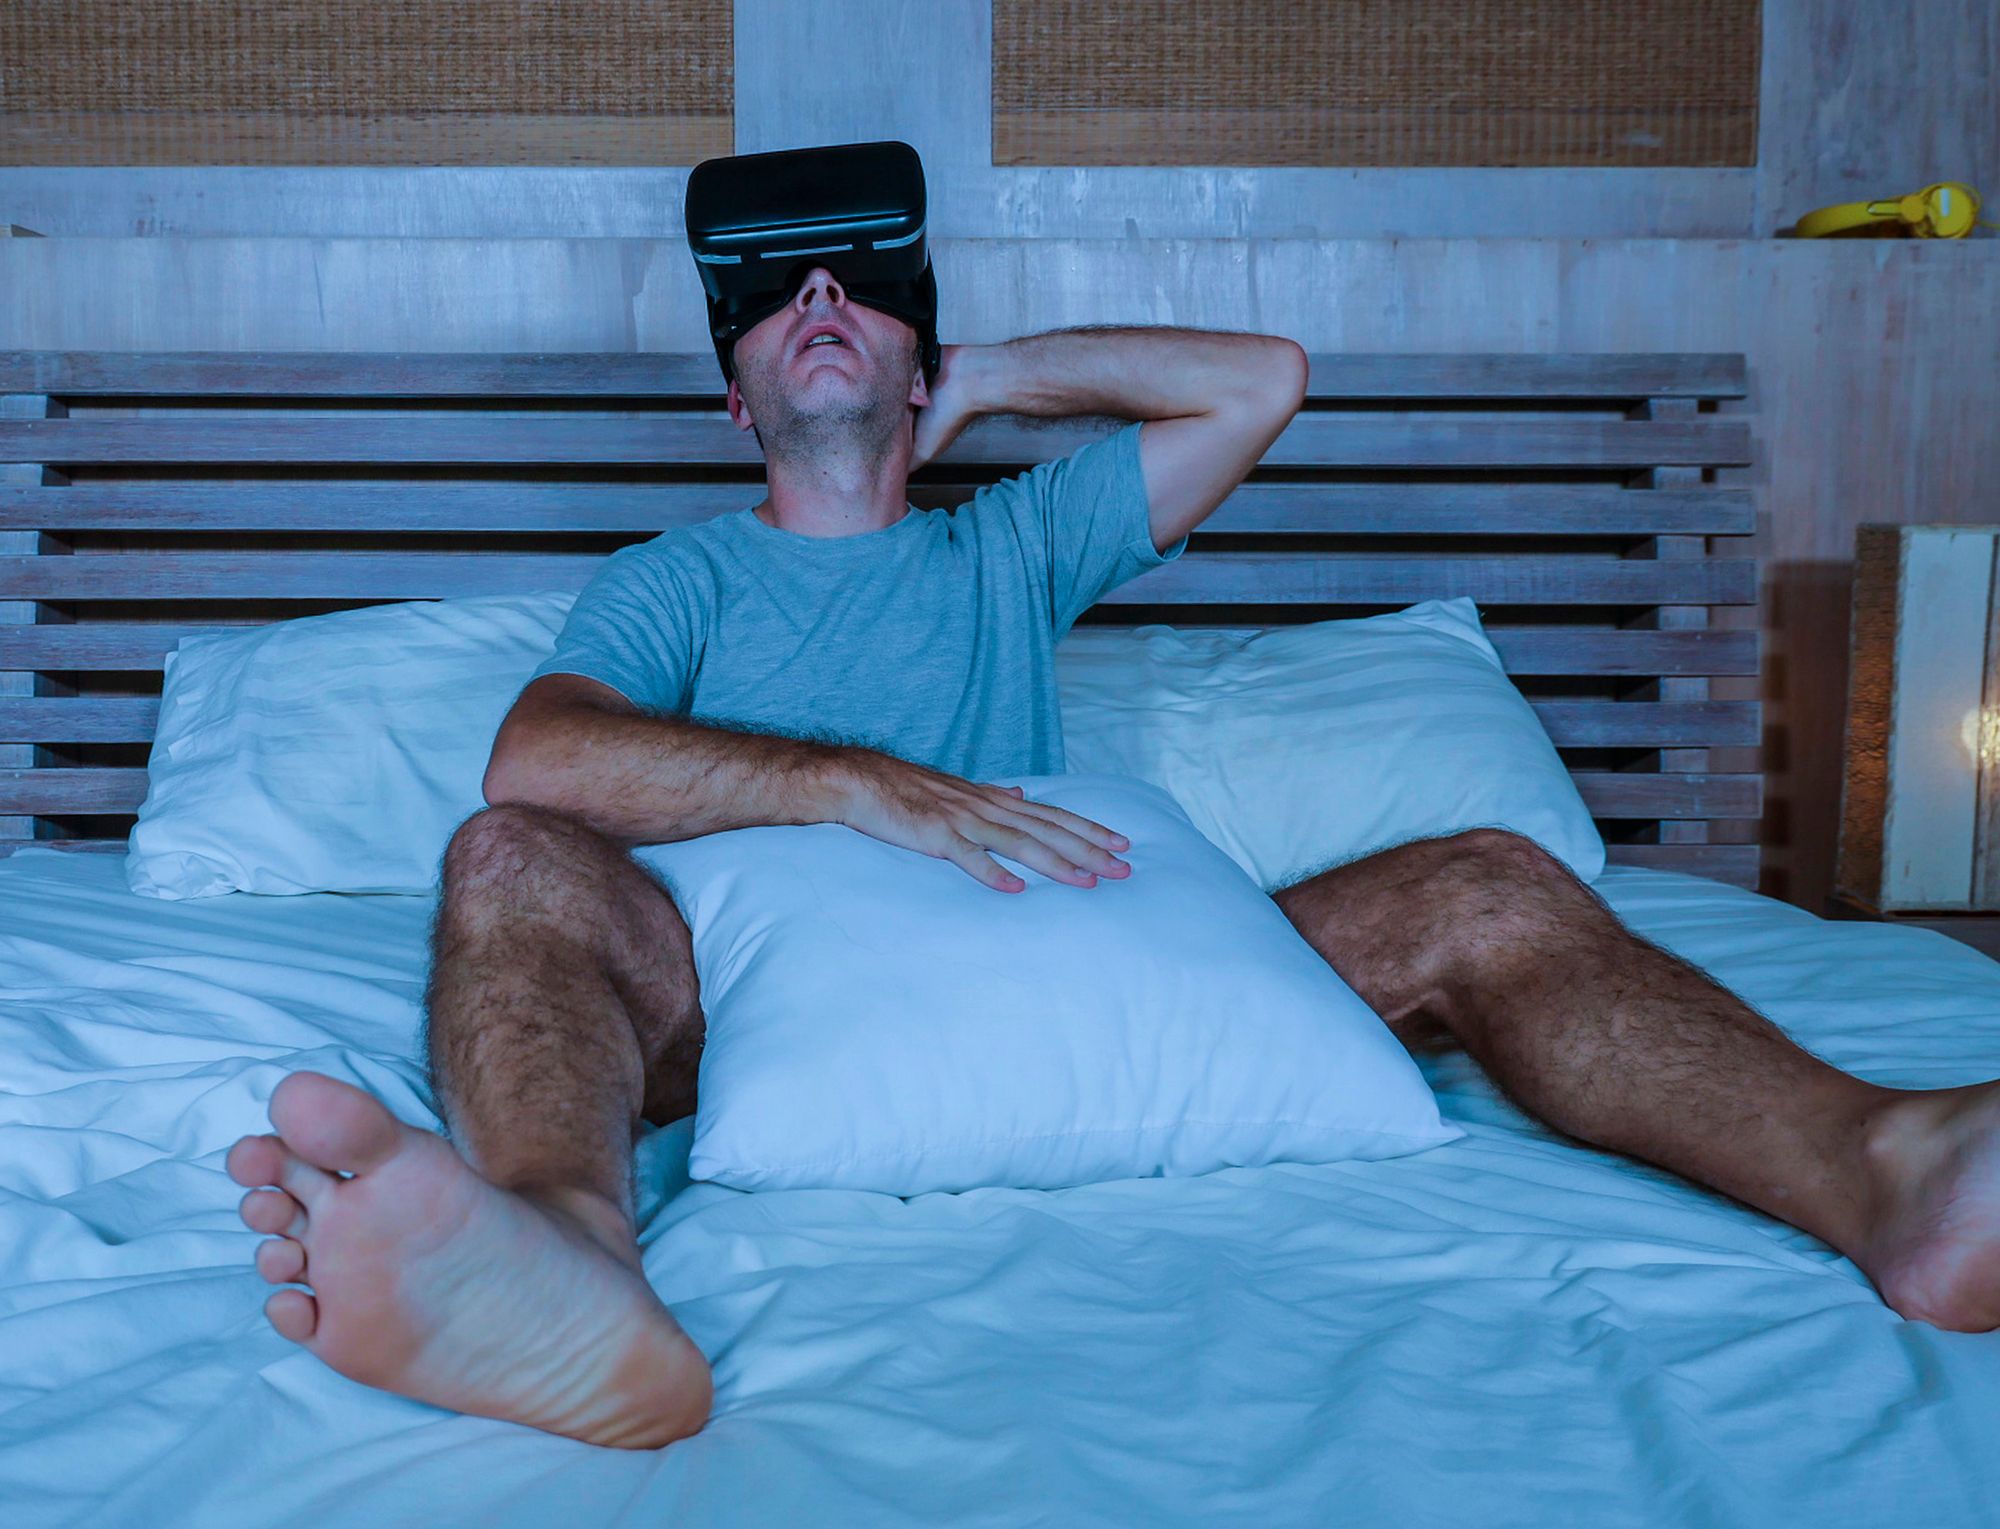 Cybersex: Mann liegt im Bett und trägt eine VR-Brille